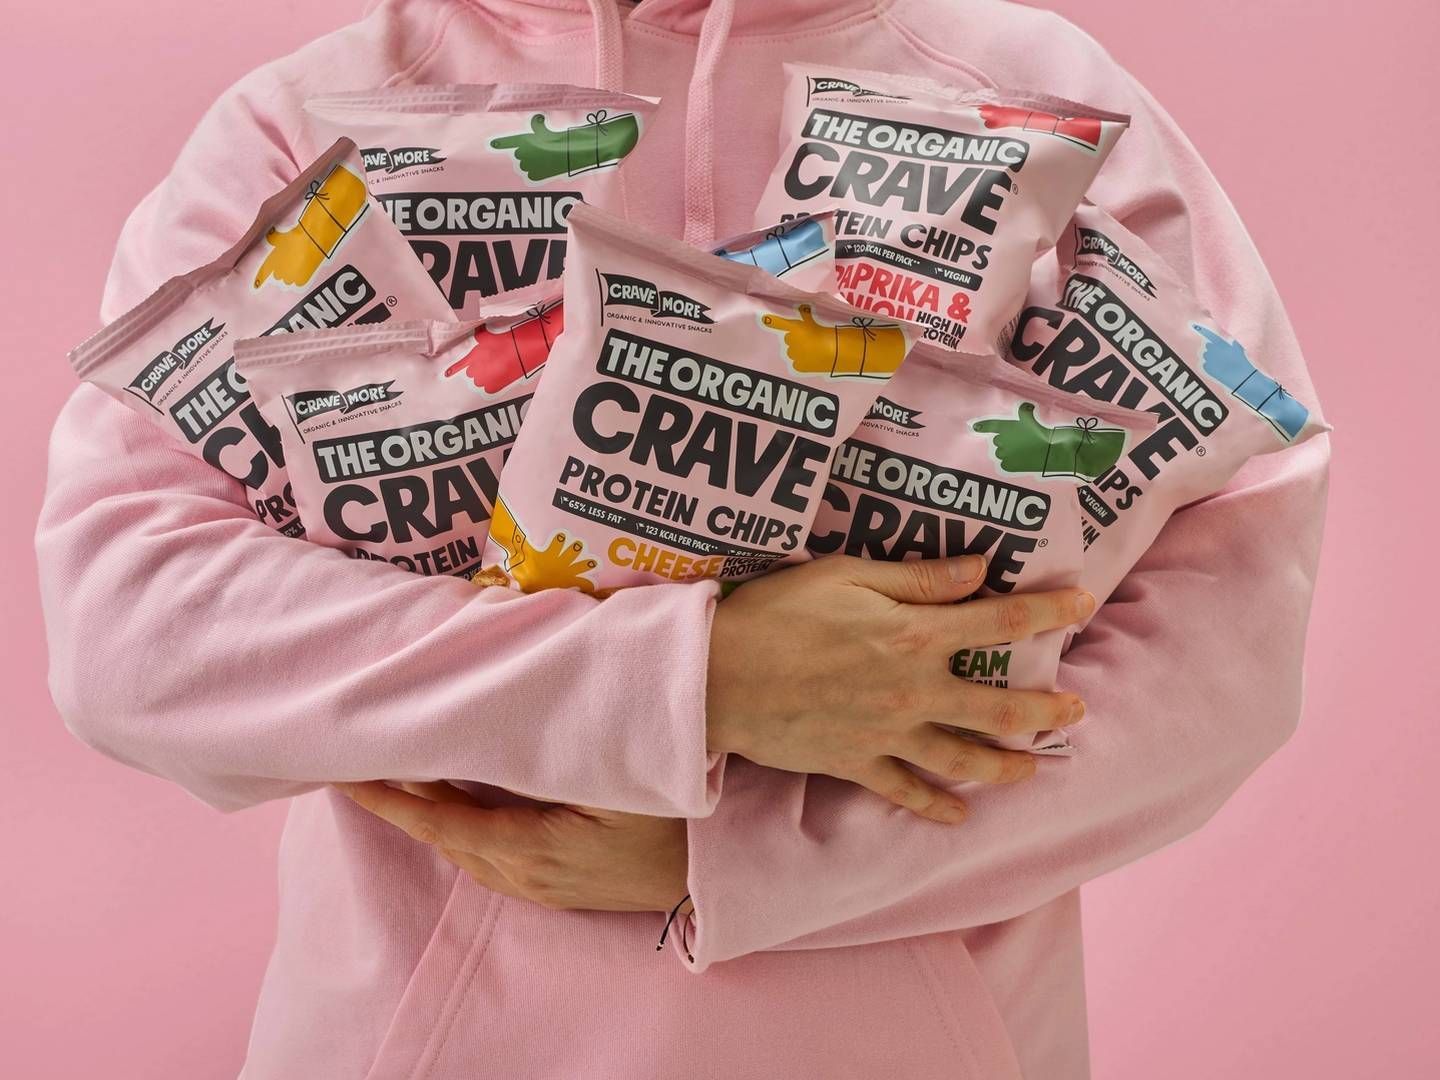 The Organic Crave Company satser på at lave sundere chips end de normale kartoffelvarianter lavet på linser, og har også en granola-bar i pipelinen af nye produkter. | Photo: PR/The Organic Crave Company